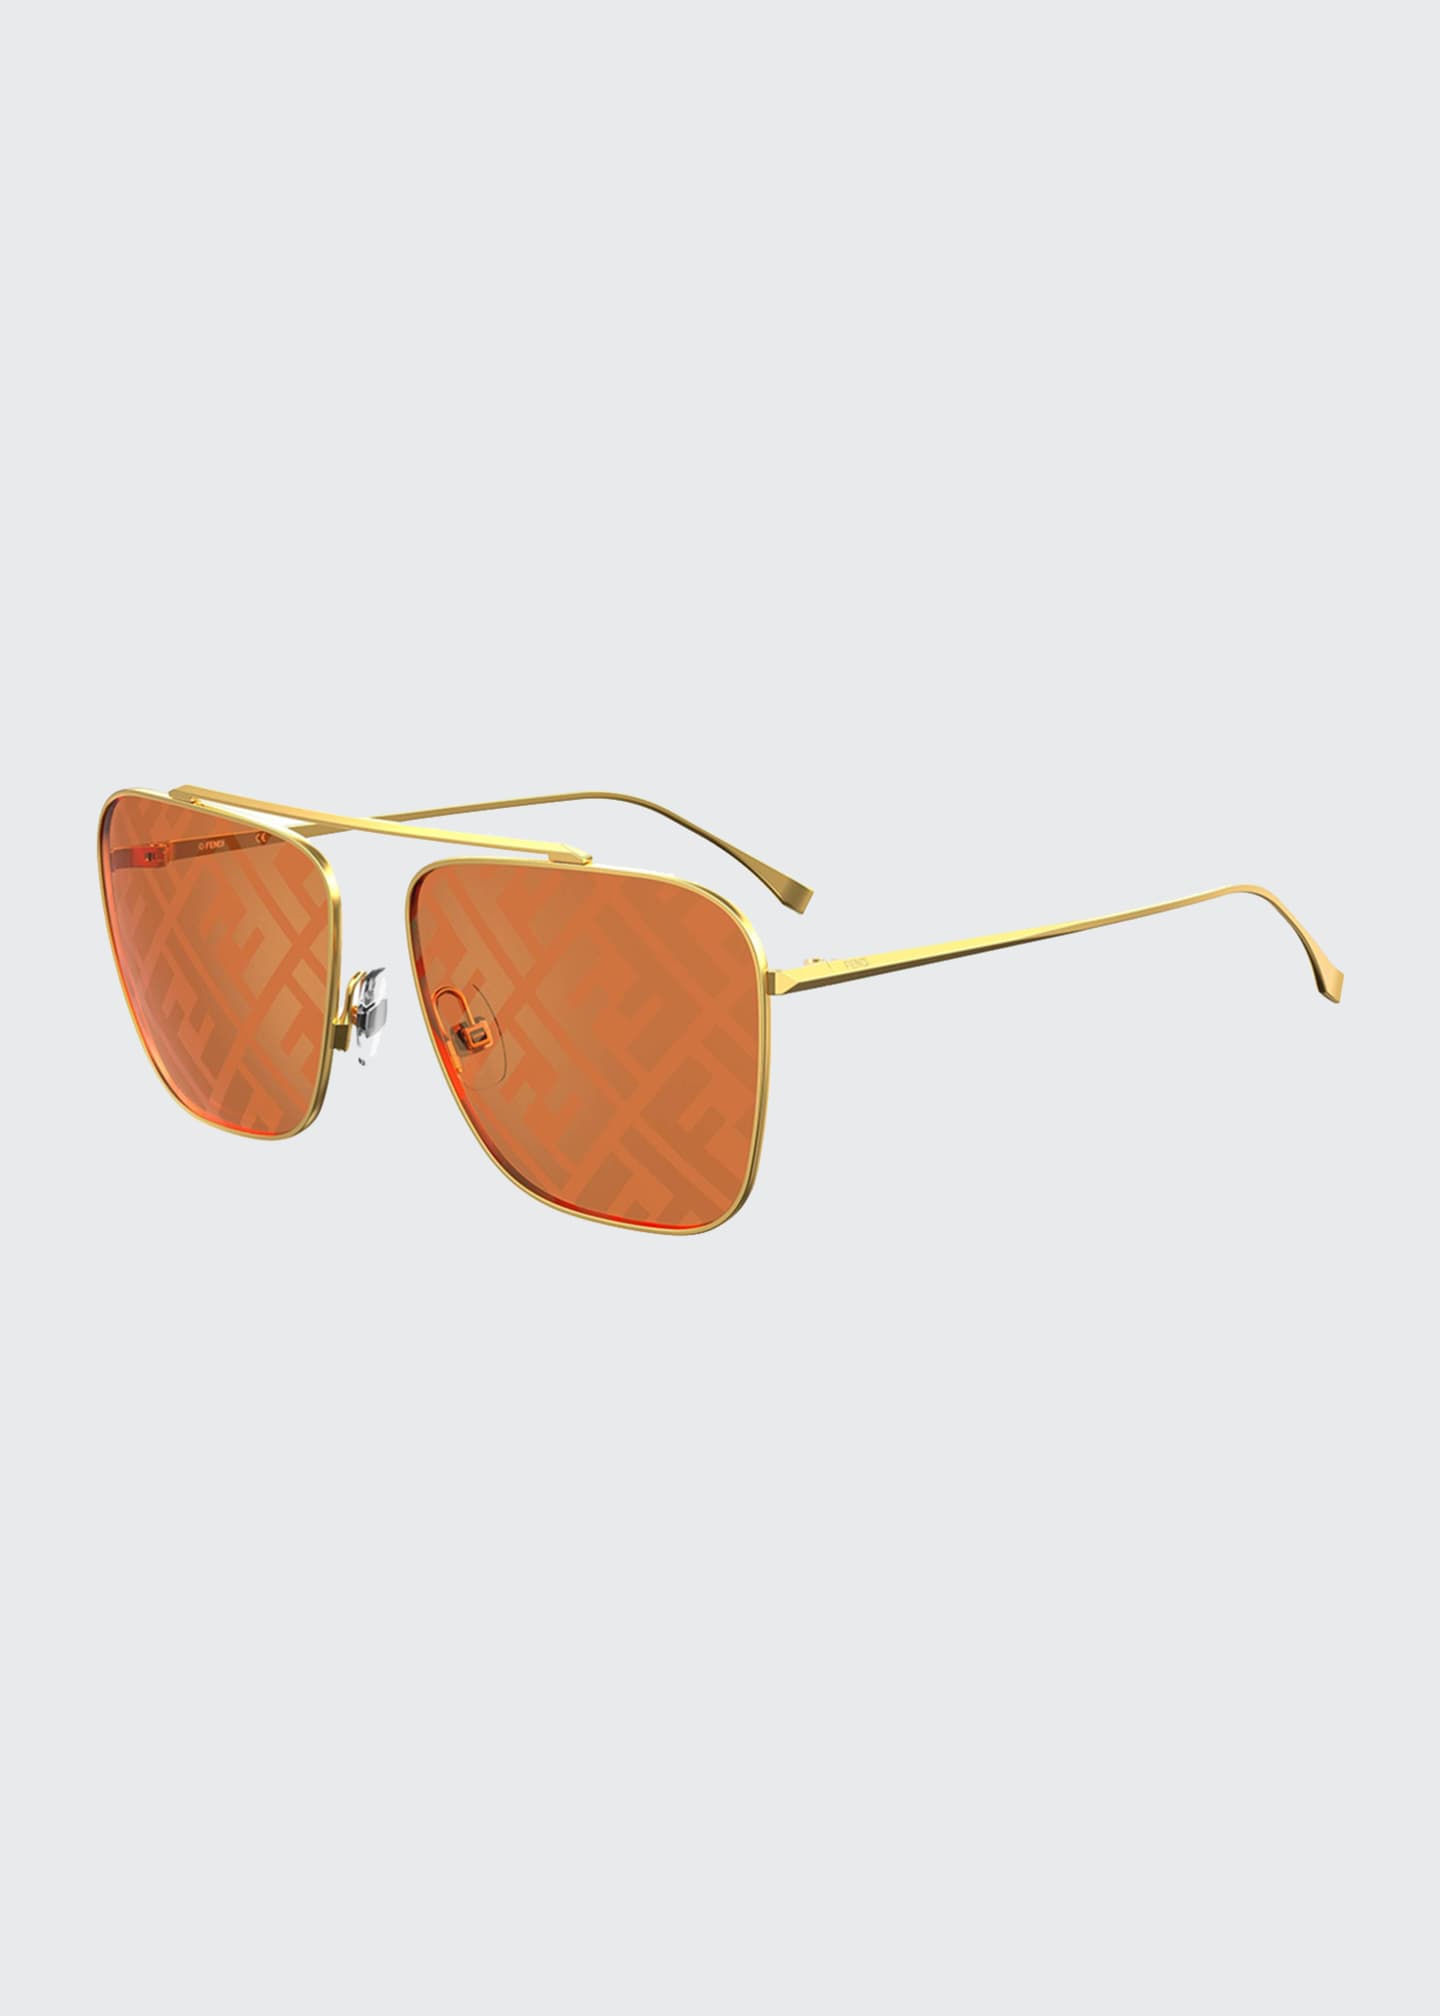 Ray-Ban Women's Sunglasses : Aviator Sunglasses at Bergdorf Goodman